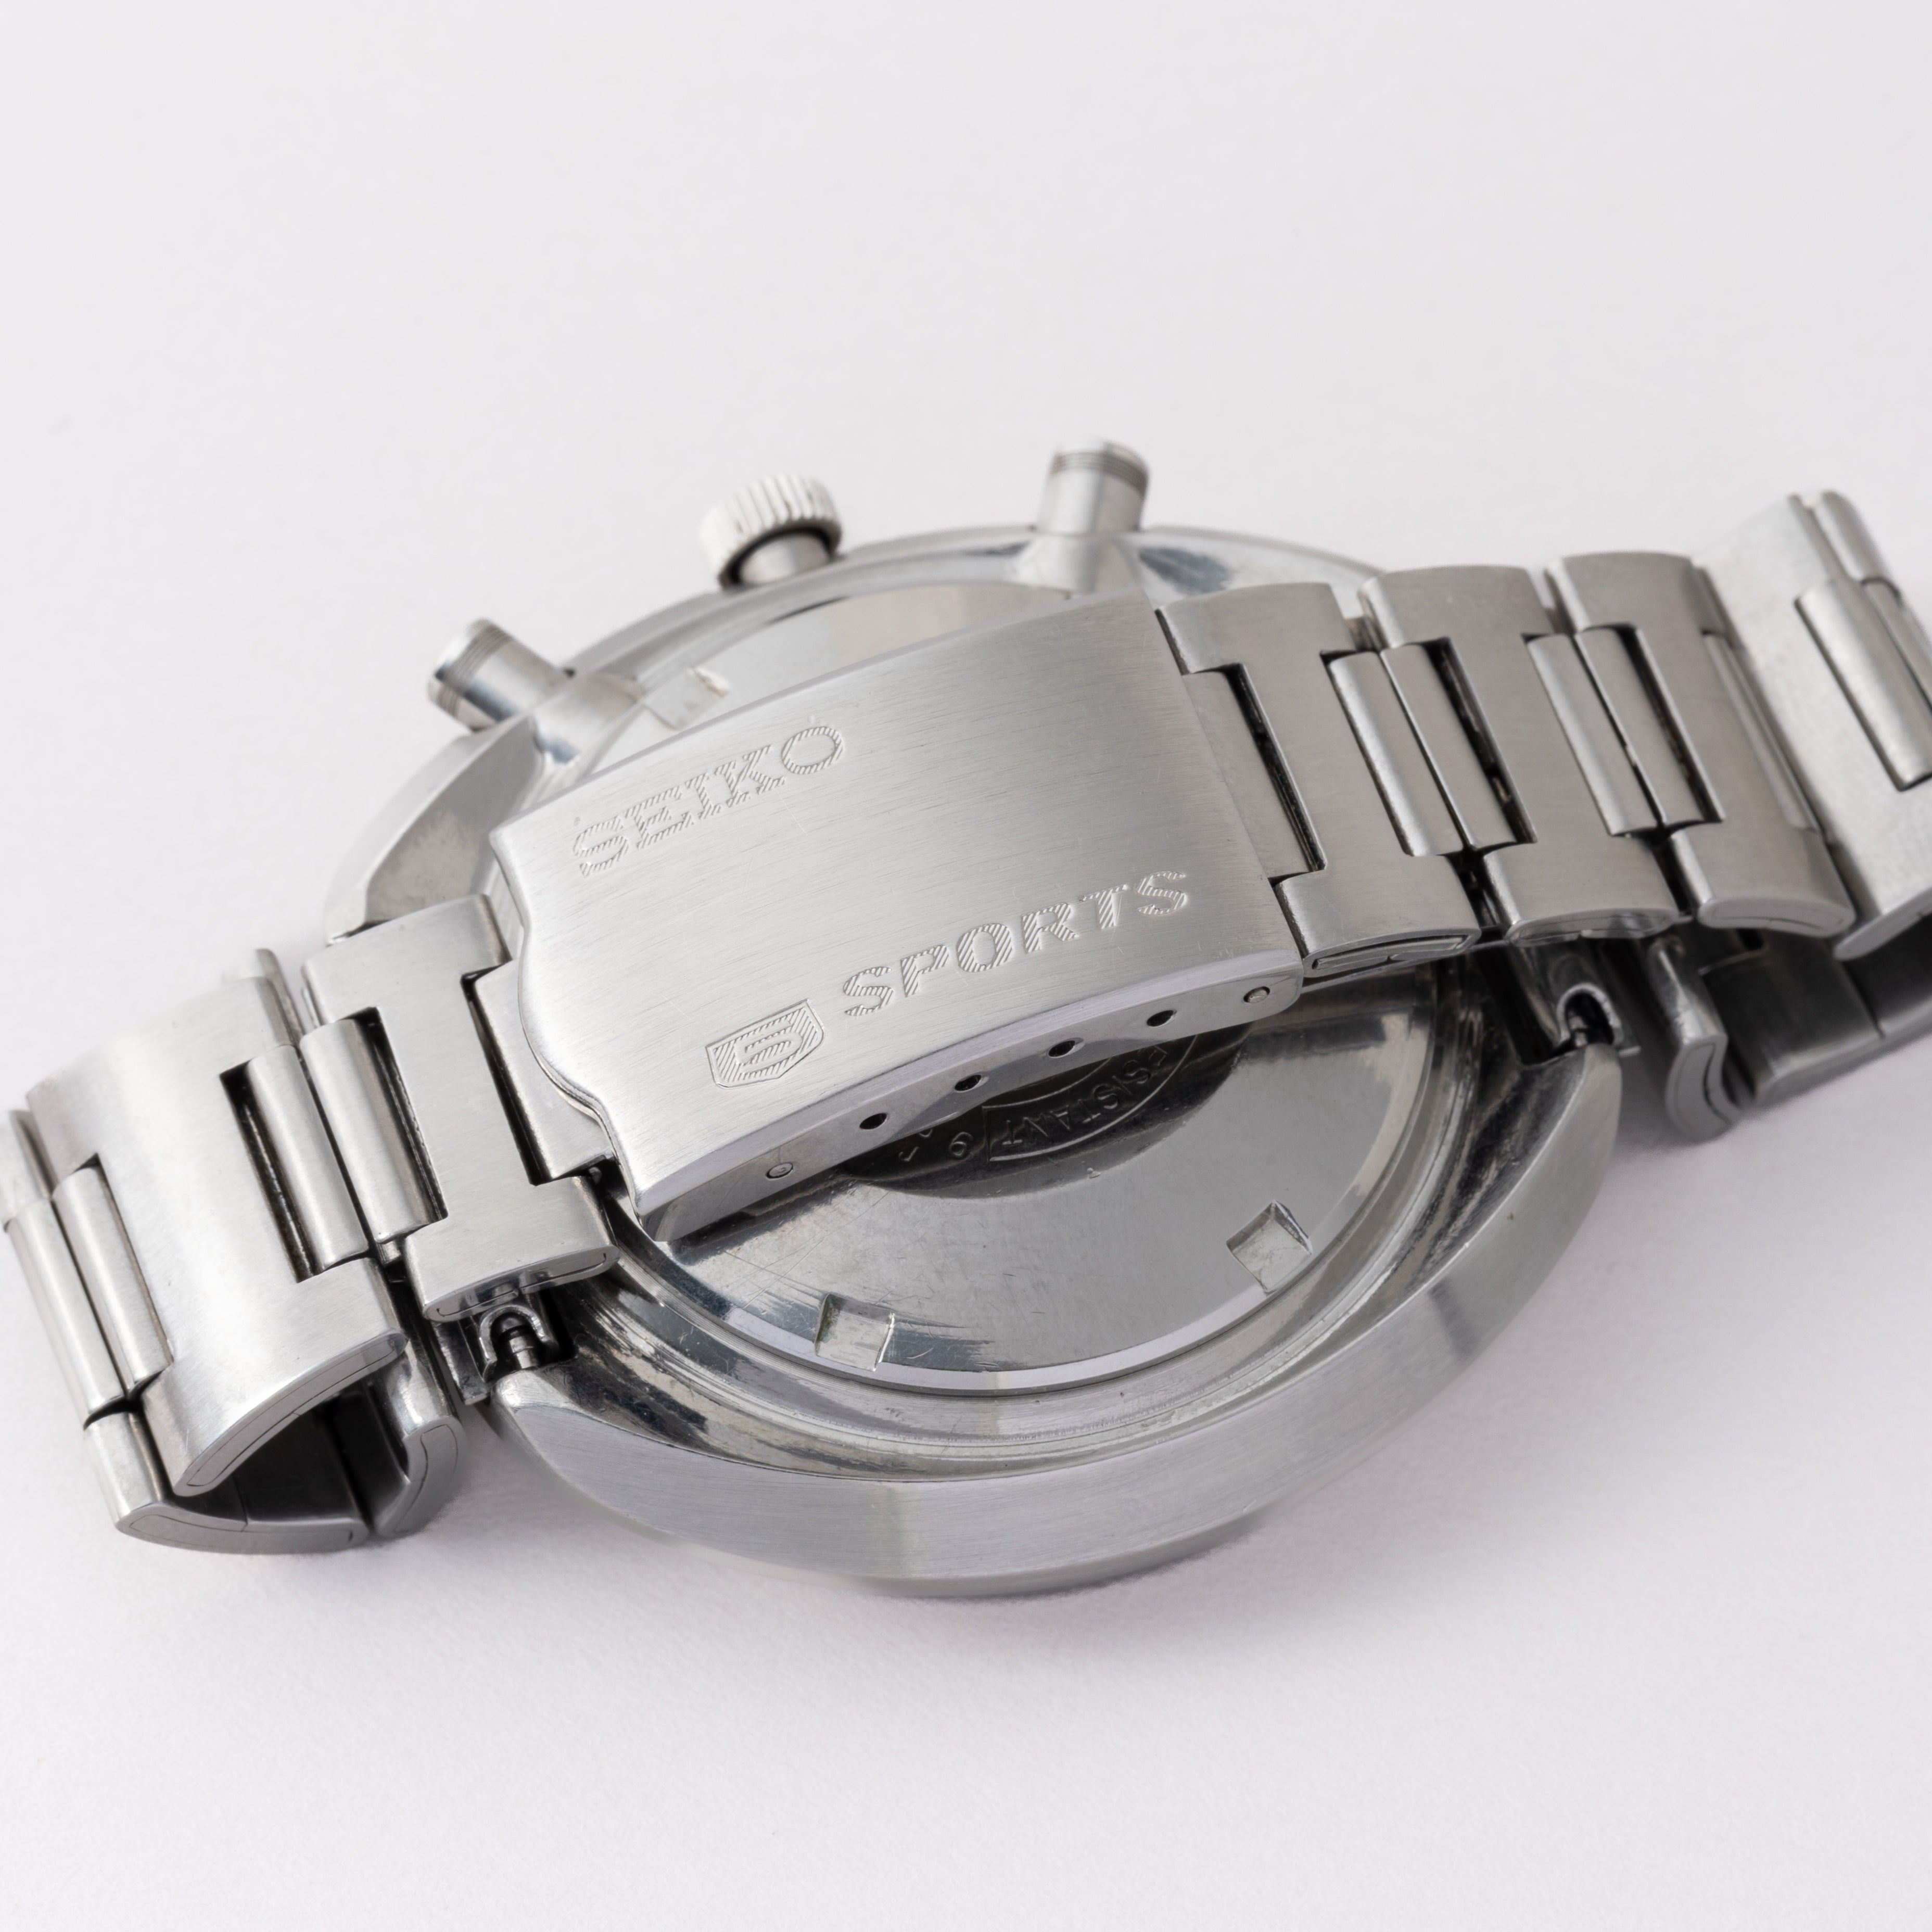 セイコー 6139-8002 1971 クロノグラフ スピードタイマー ビンテージ ヴィンテージ SEIKO - ブランド腕時計